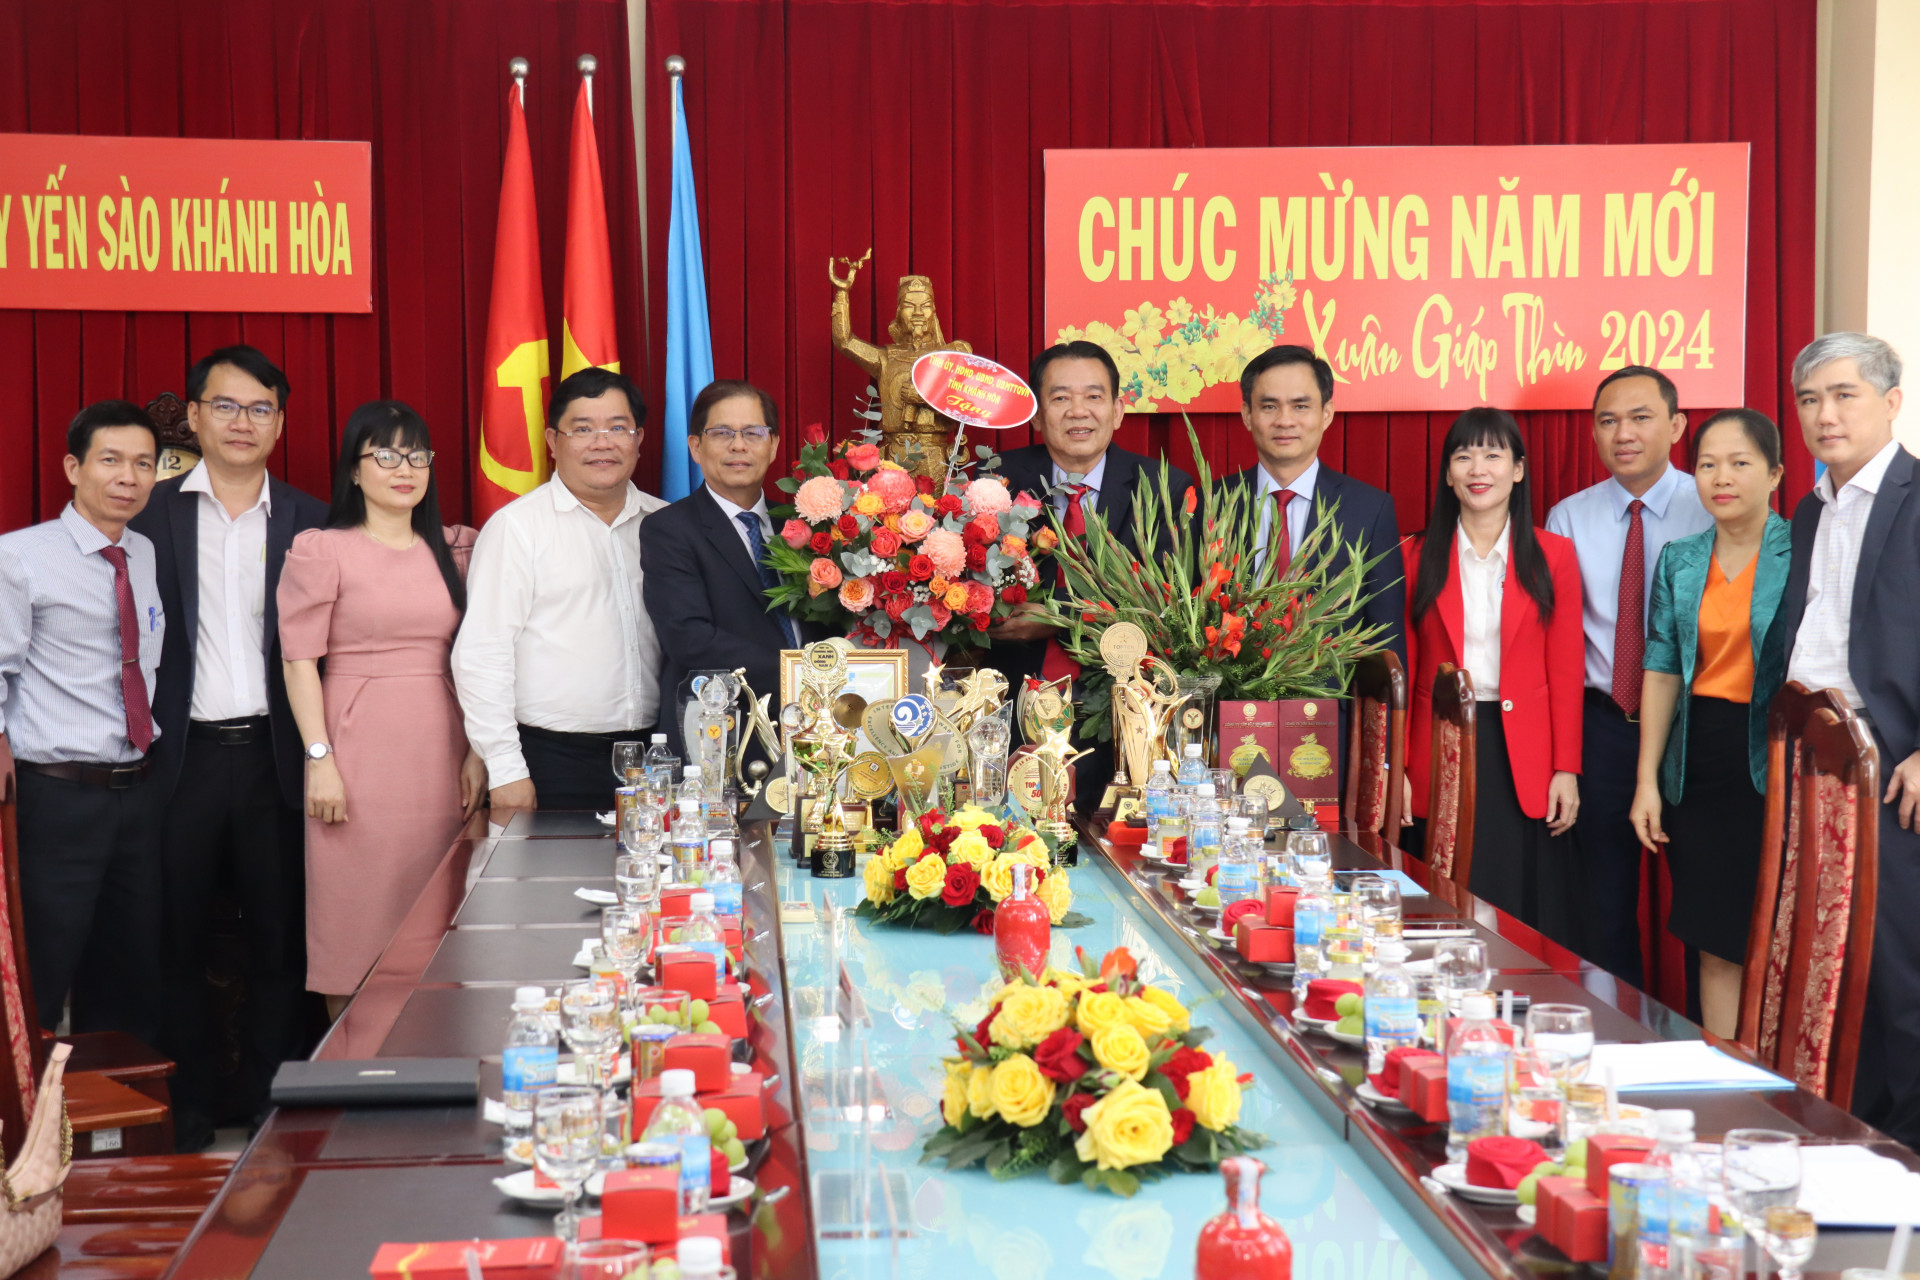 Chủ tịch UBND tỉnh Nguyễn Tấn Tuân tặng hoa chúc mừng năm mới Công ty TNHH Nhà nước một thành viên Yến sào Khánh Hòa